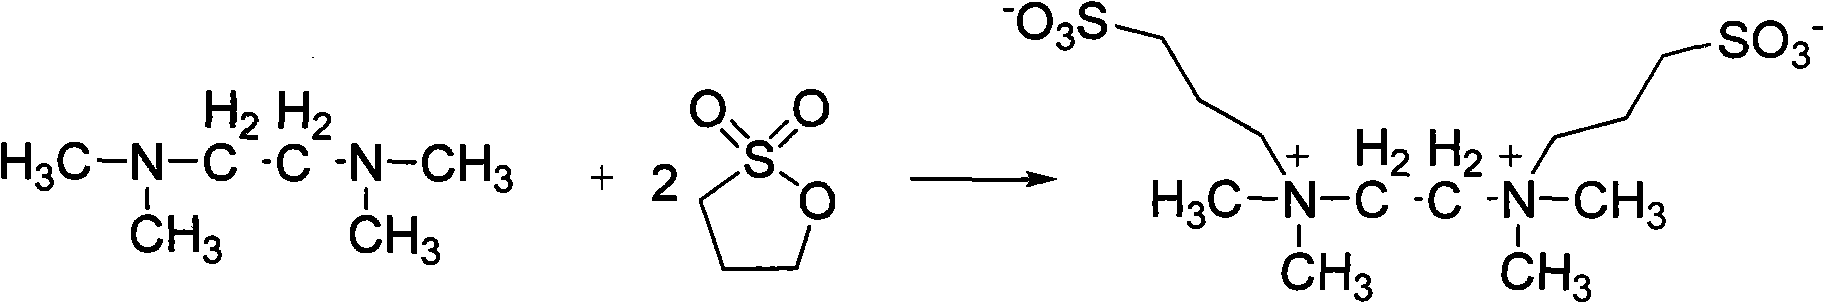 N,N,N,N-tetramethylethylenediamine sulphonate ionic liquid and preparation method thereof